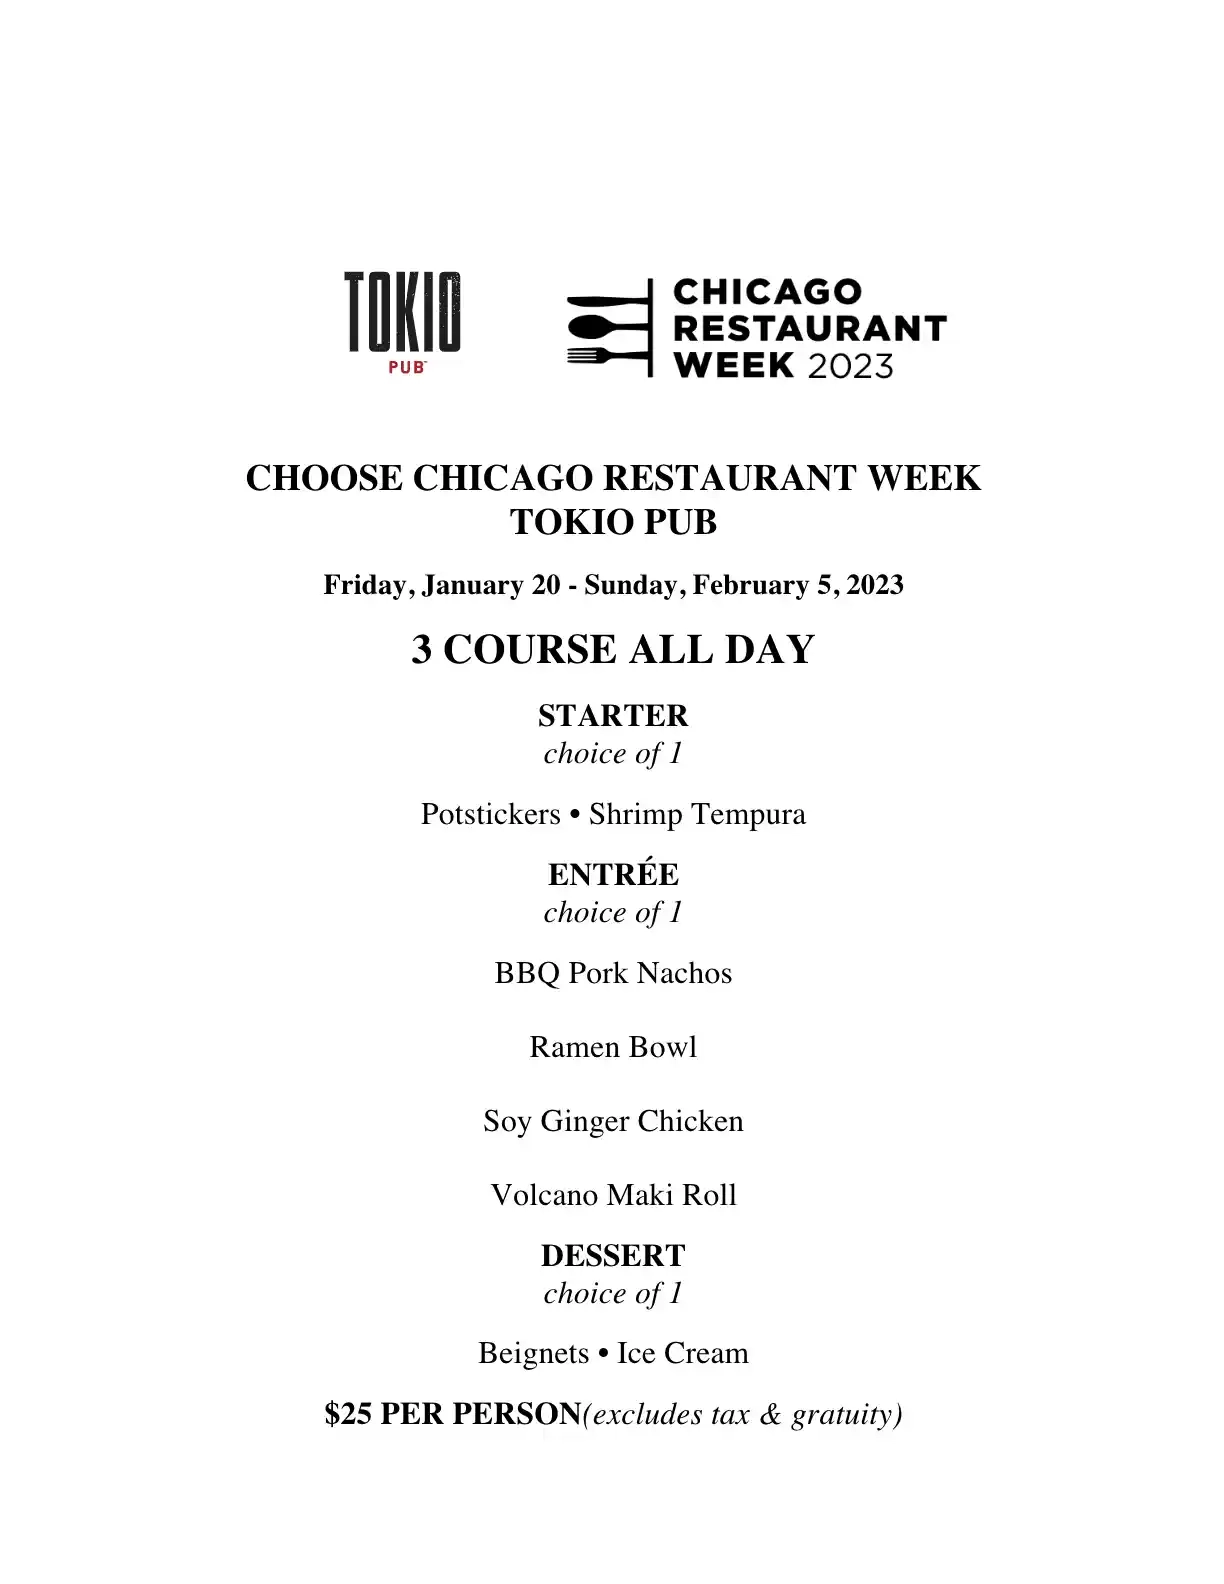 Chicago Restaurant Week 2023 Menu The Tokio Pub